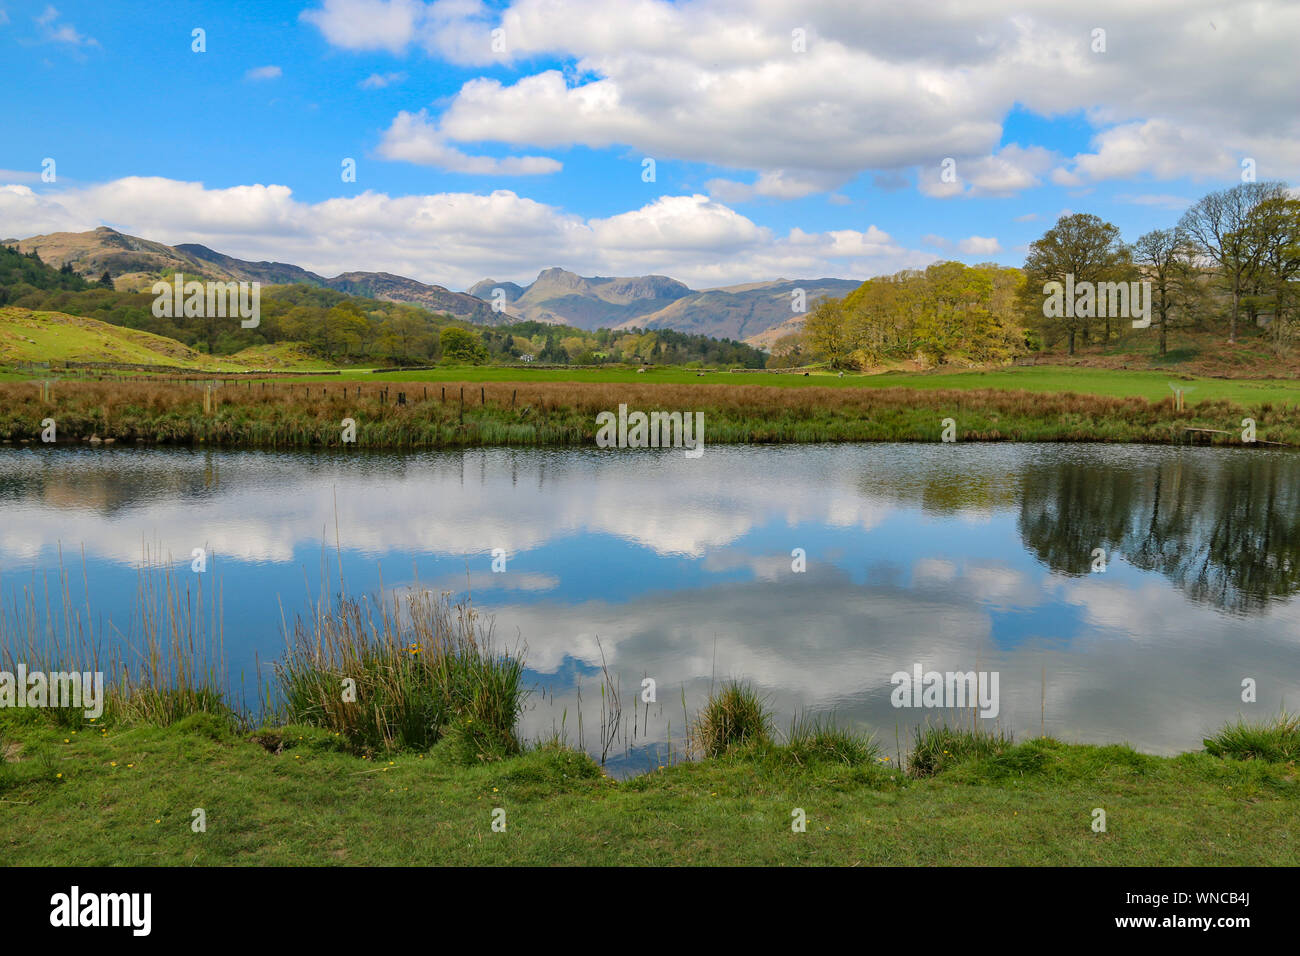 Impresionante vista de la mountainsm en Langdale Pikes Elter, más agua, cerca de Ambleside, Cumbria, Reino Unido Foto de stock